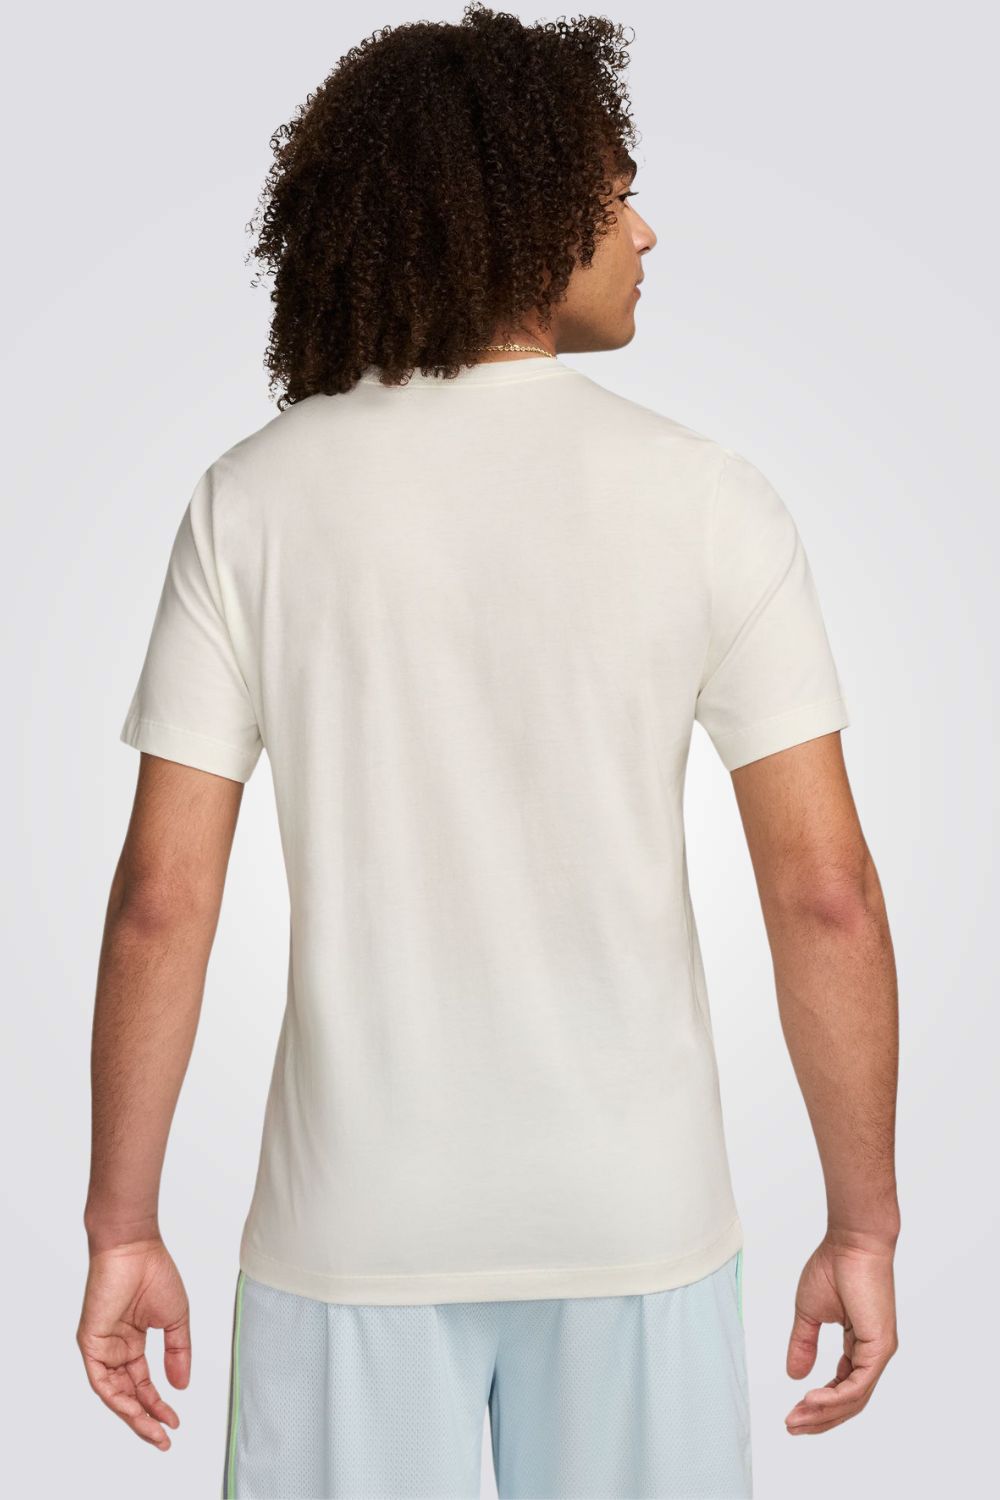 חולצה מבית המותג NIKE , עשויה מבד נוח ומשלבת בין אופנתיות לנוחות בלתי מתפשרת